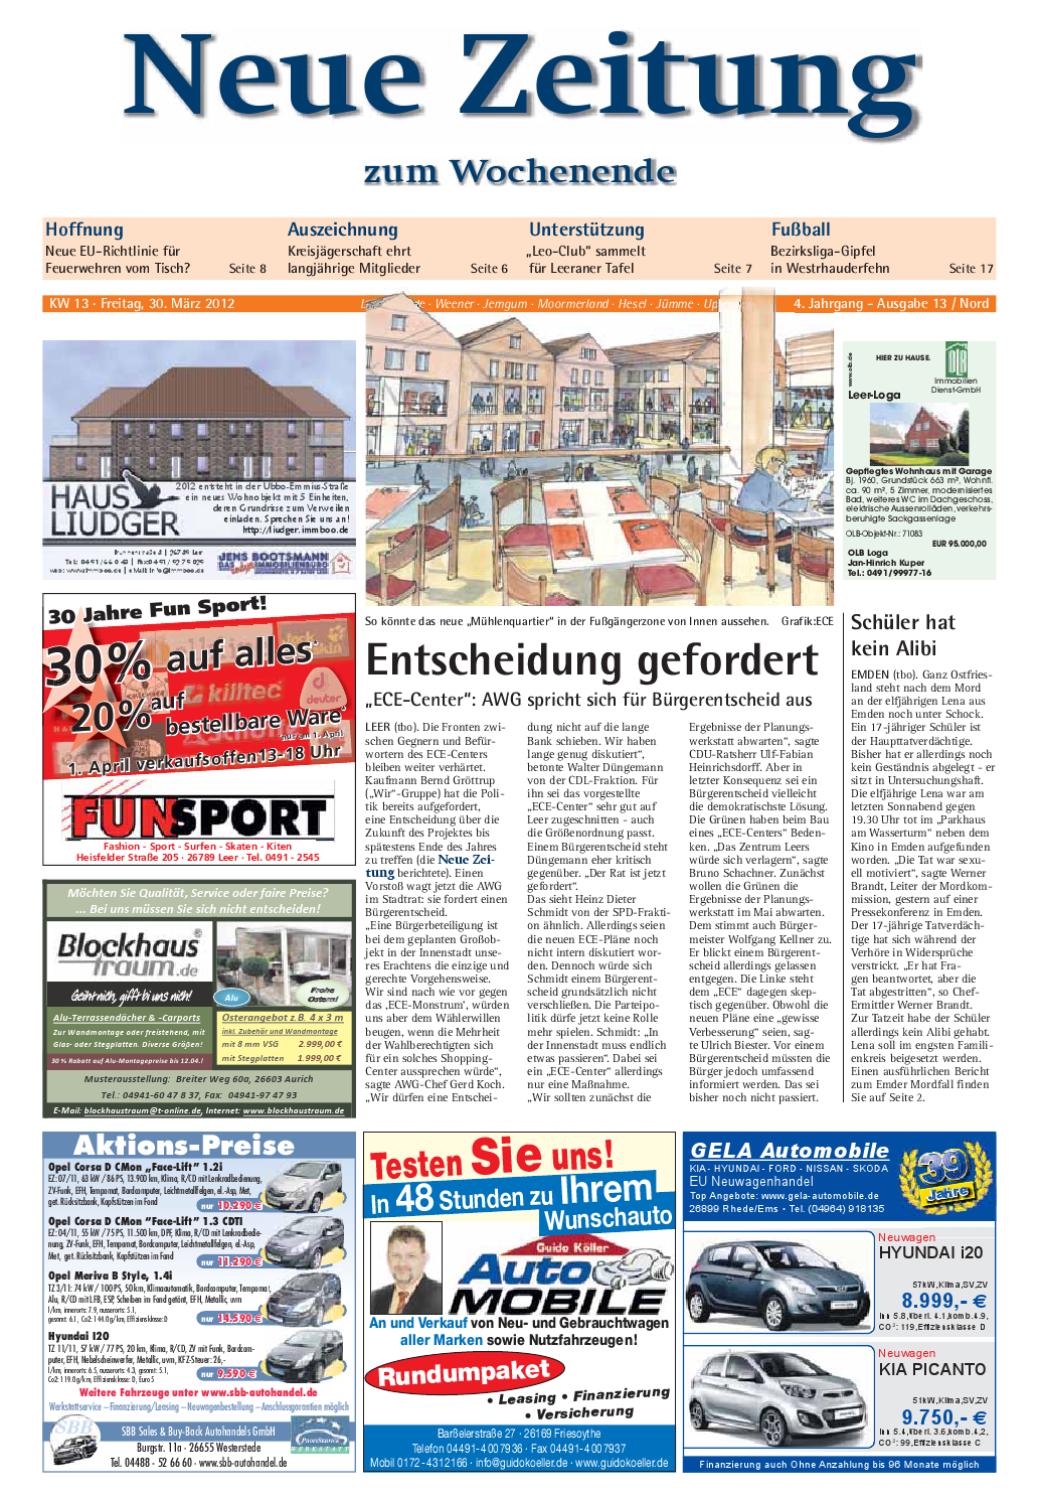 Otto Gartenkatalog Schön Neue Zeitung Ausgabe nord Kw 13 2012 by Gerhard Verlag